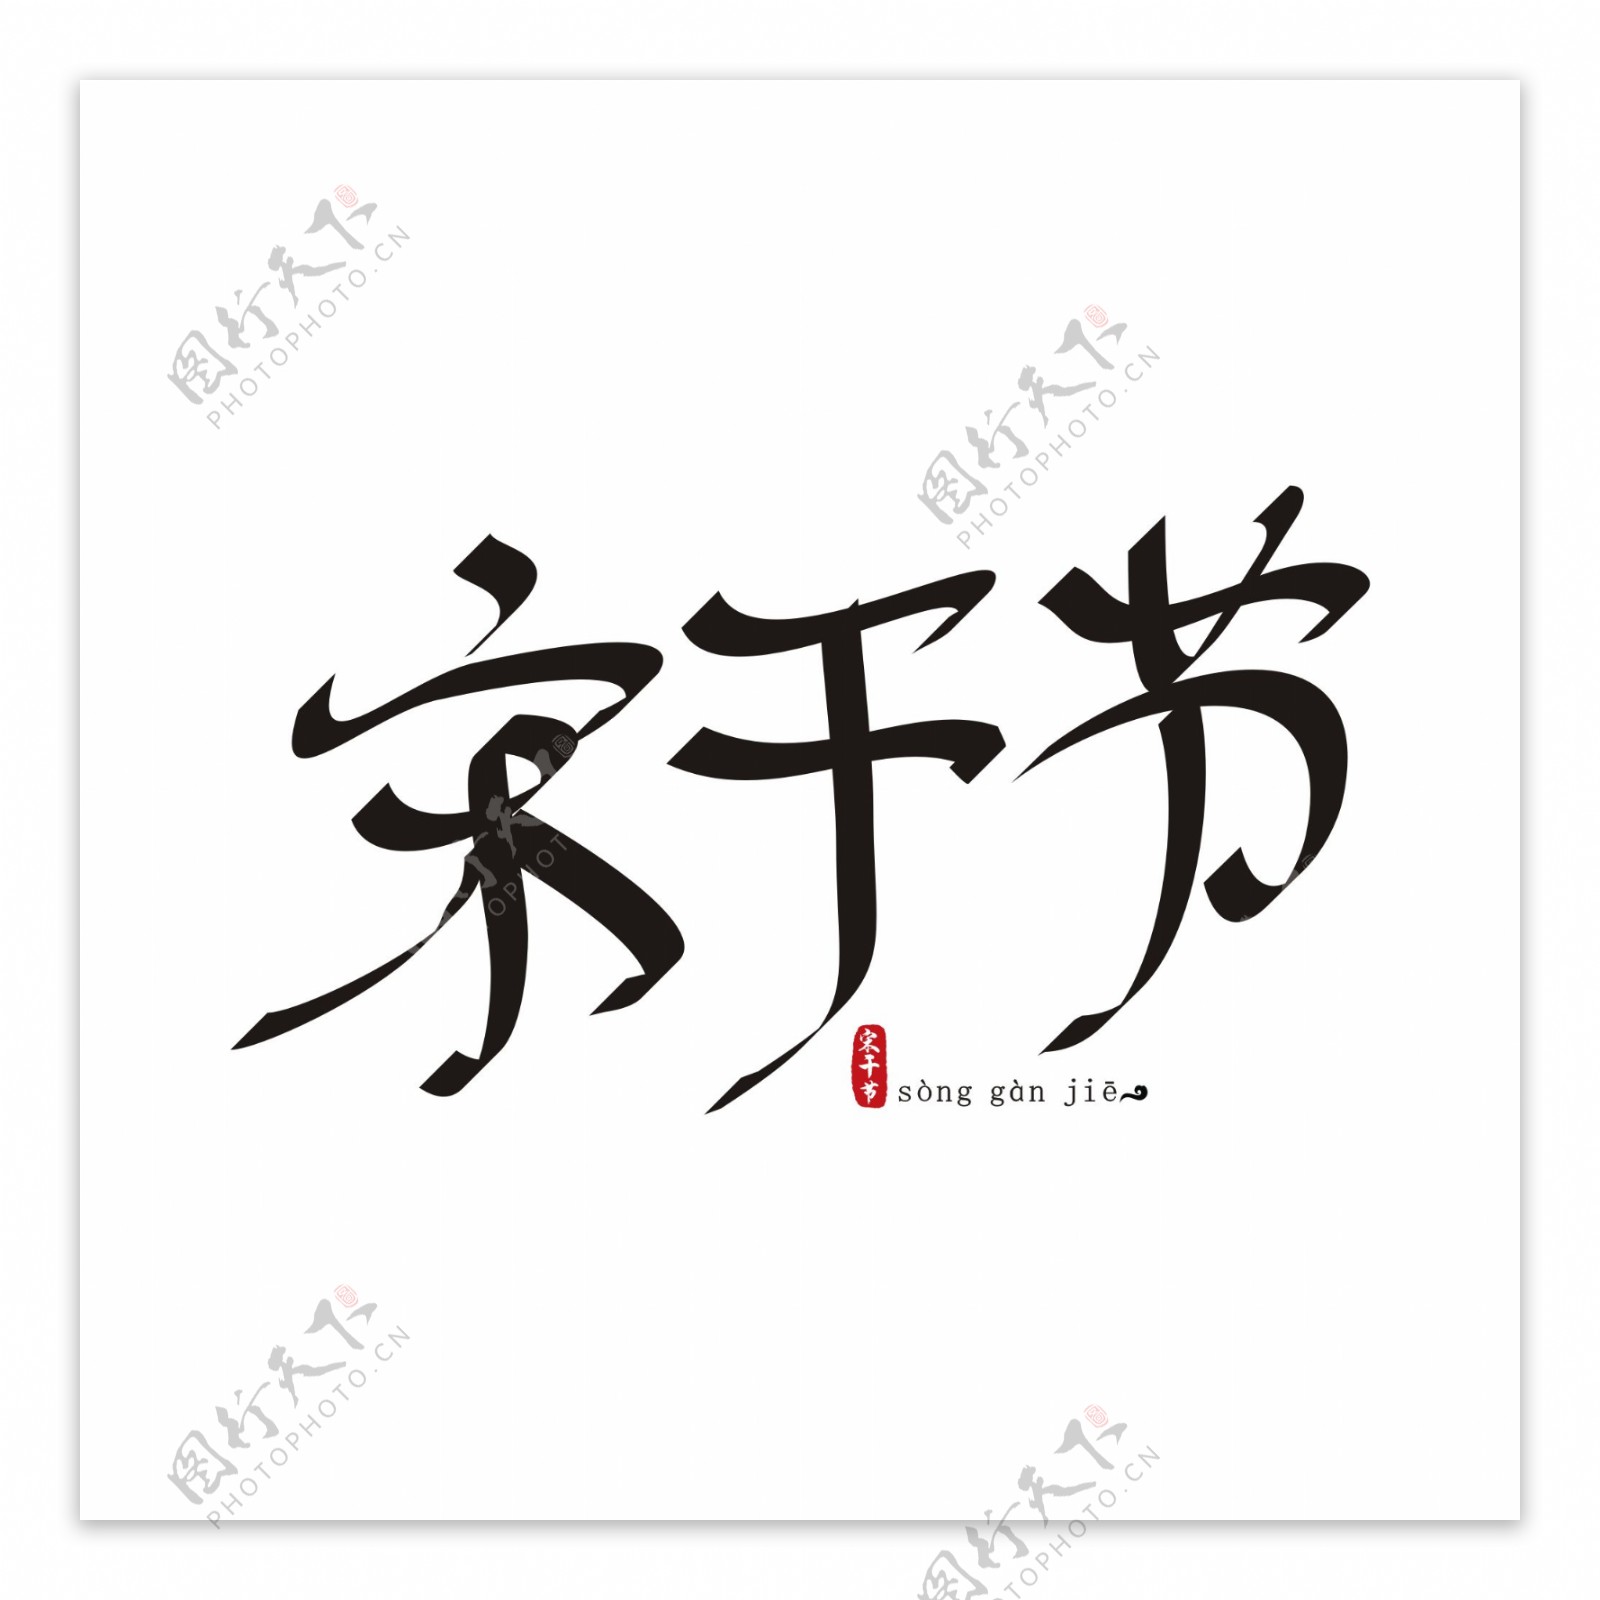 宋干节中国风创意手绘书法矢量艺术字